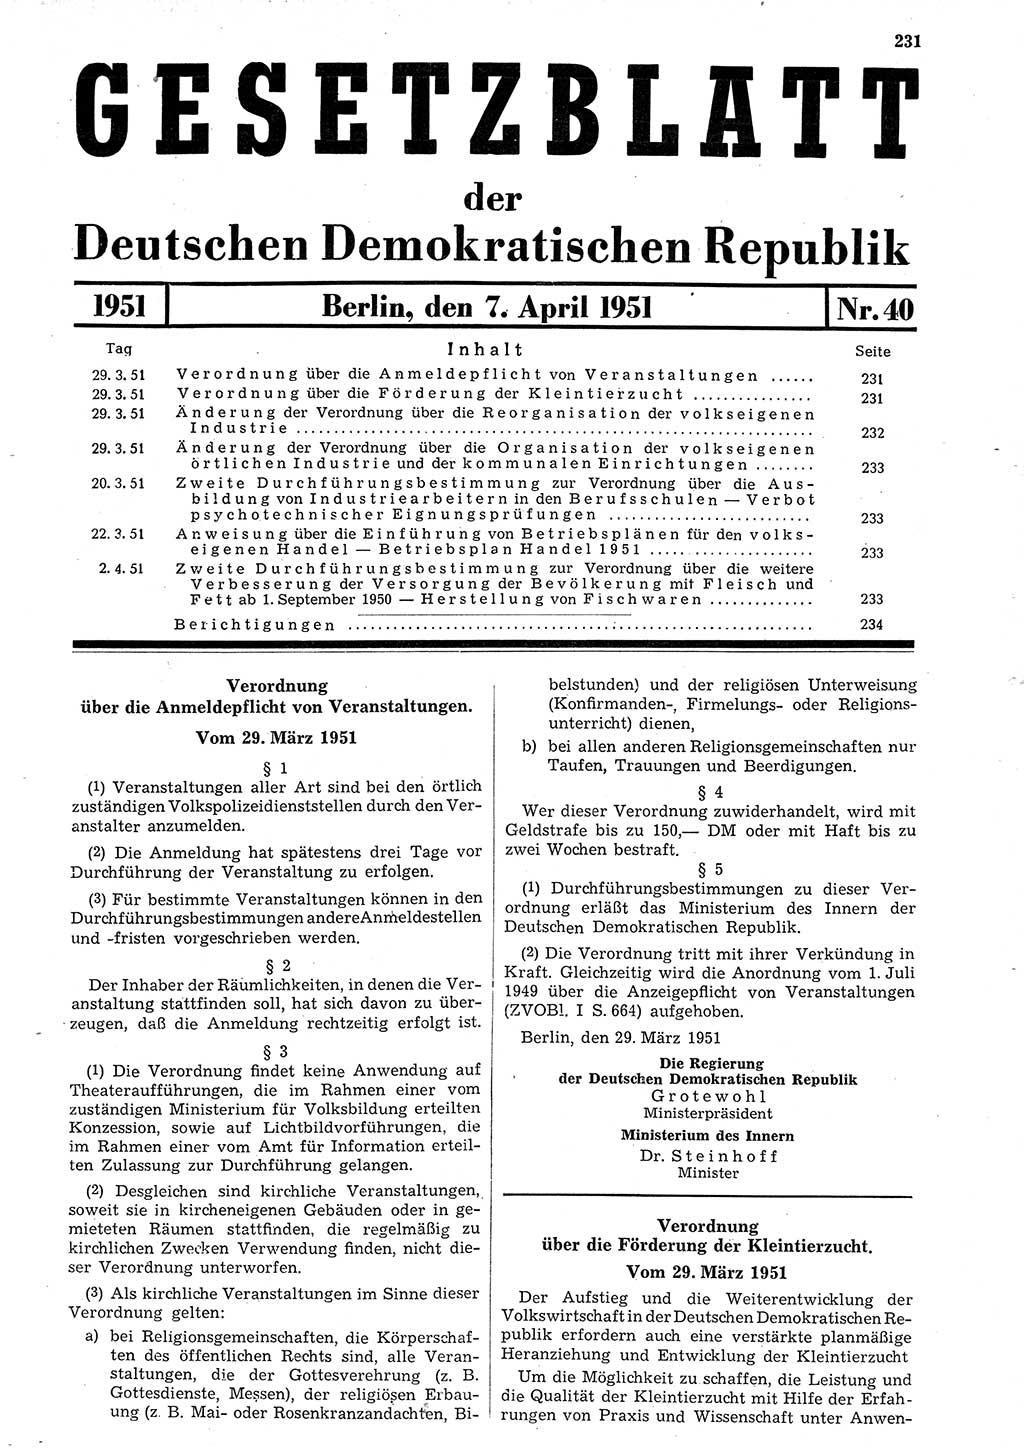 Gesetzblatt (GBl.) der Deutschen Demokratischen Republik (DDR) 1951, Seite 231 (GBl. DDR 1951, S. 231)